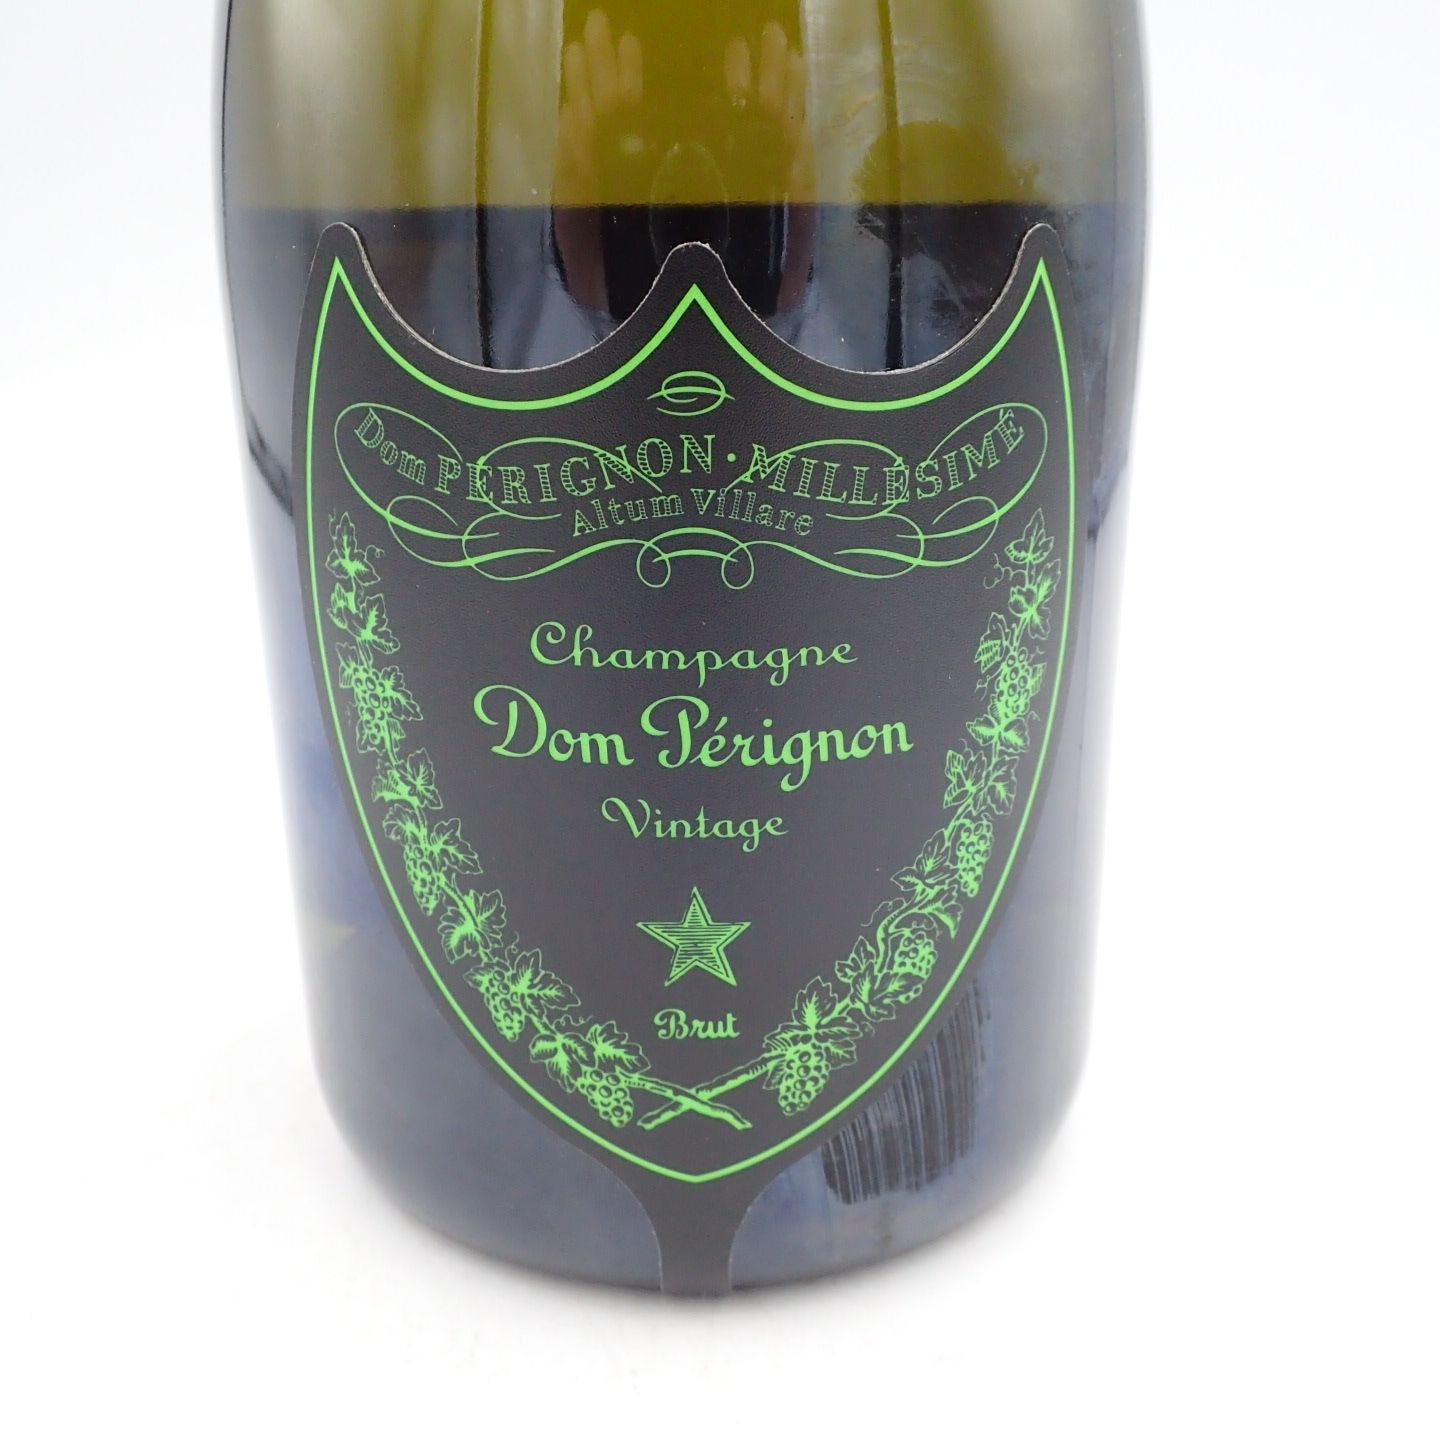 ドンペリニヨン 白 ルミナス 750ml 12.5% - お酒の格安本舗 クーポン